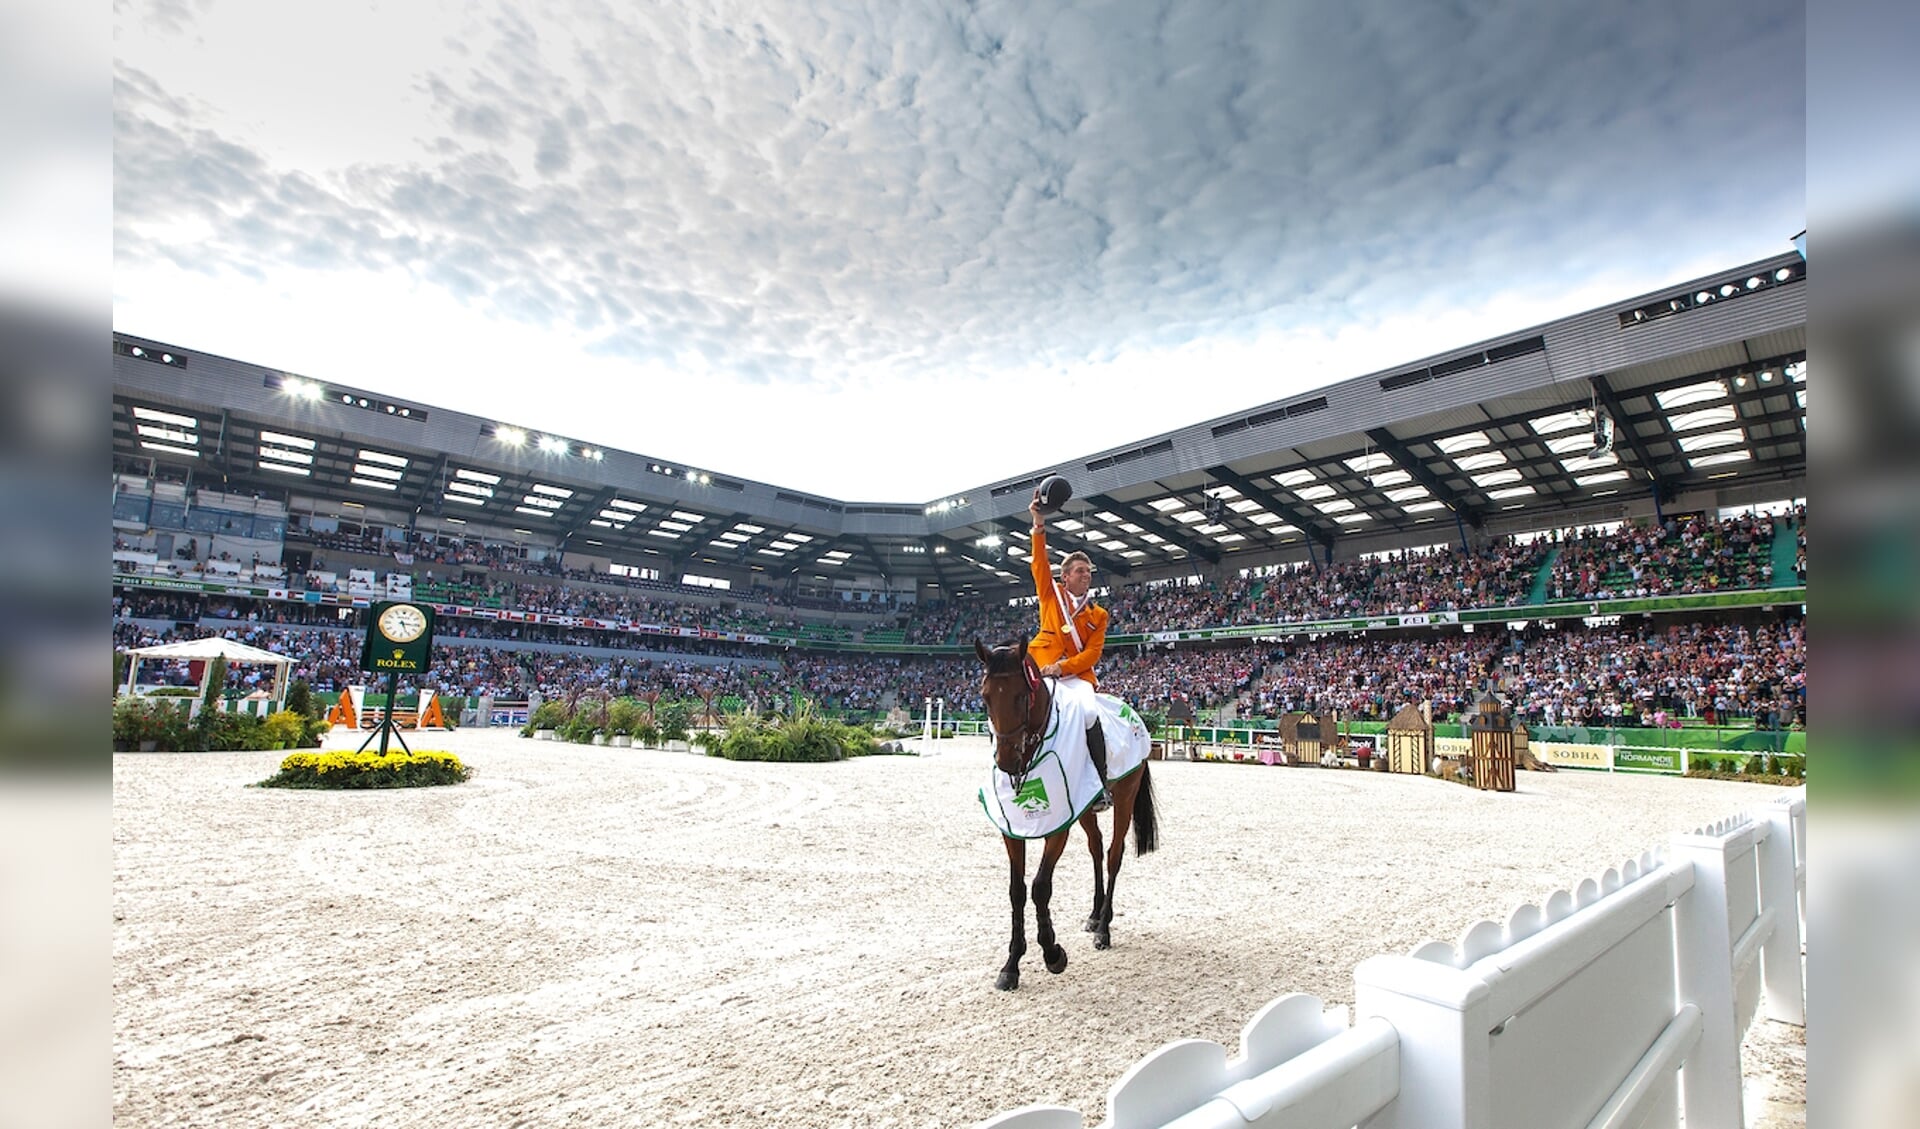 Jeroen Dubbeldam hier met Zenith SFN bij de 
Alltech FEI World Equestrian Games™ 2014 - Normandy, France.
© DigiShots